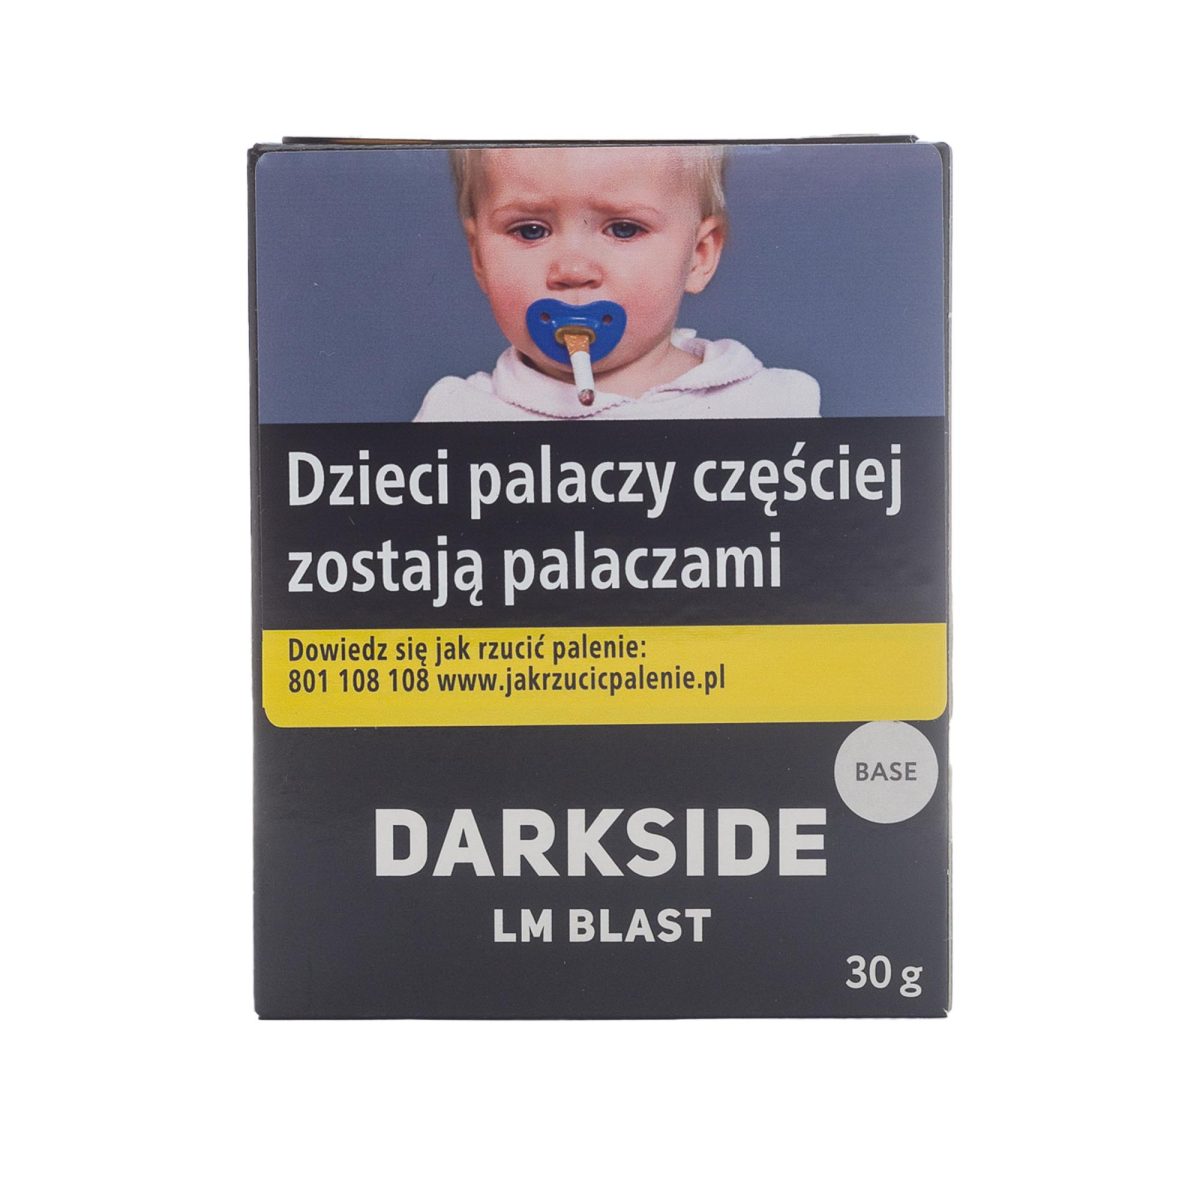 Darkside Base Lm Blast 30g